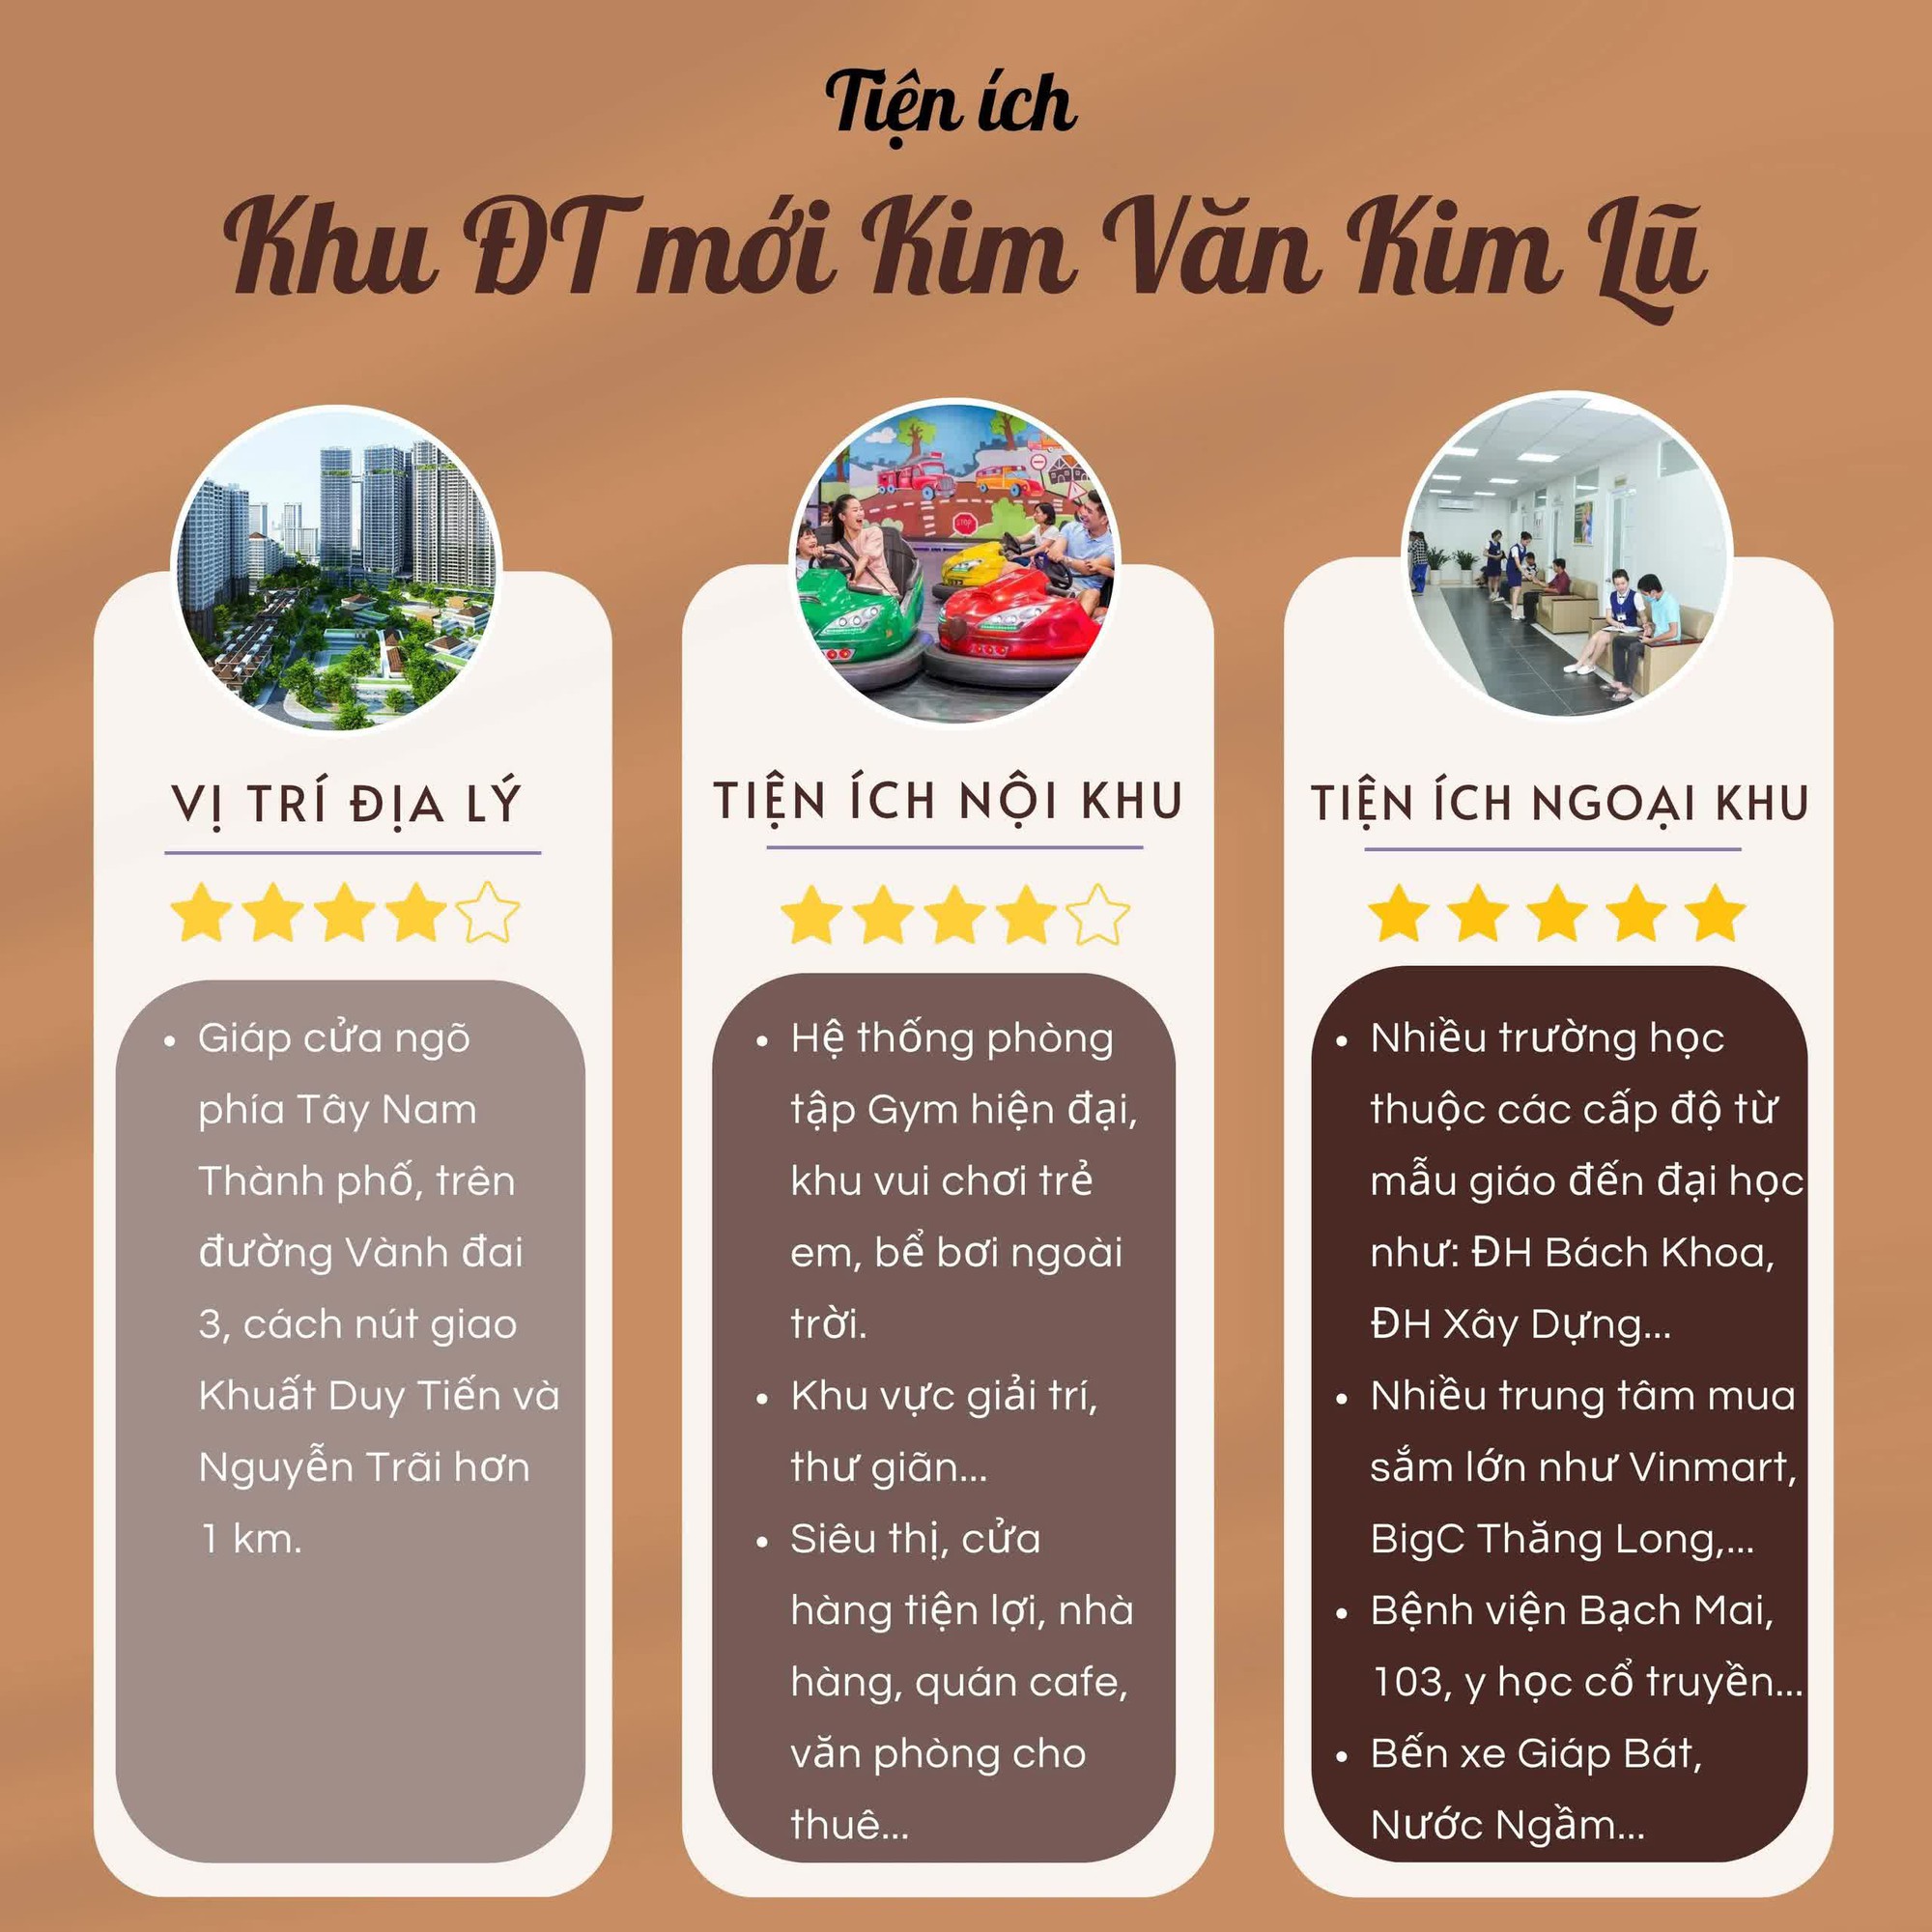 Đánh giá khu chung cư giá rẻ ở Hà Nội: 